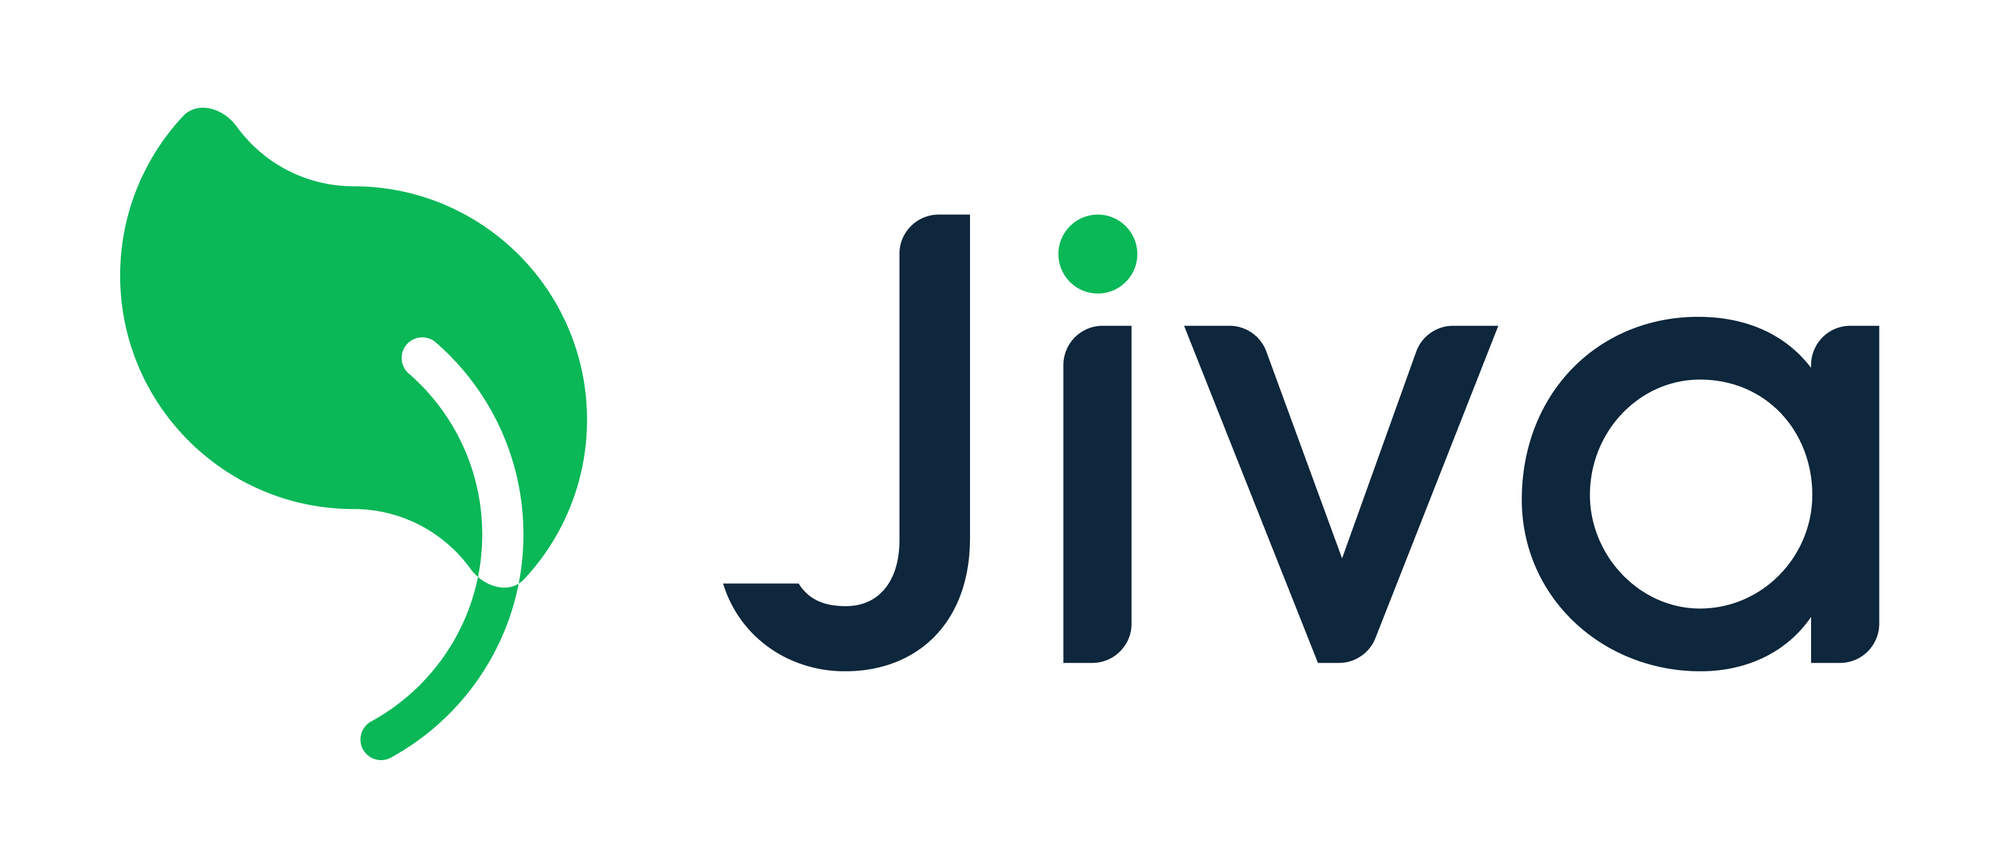 Jiva is hiring on Meet.jobs!